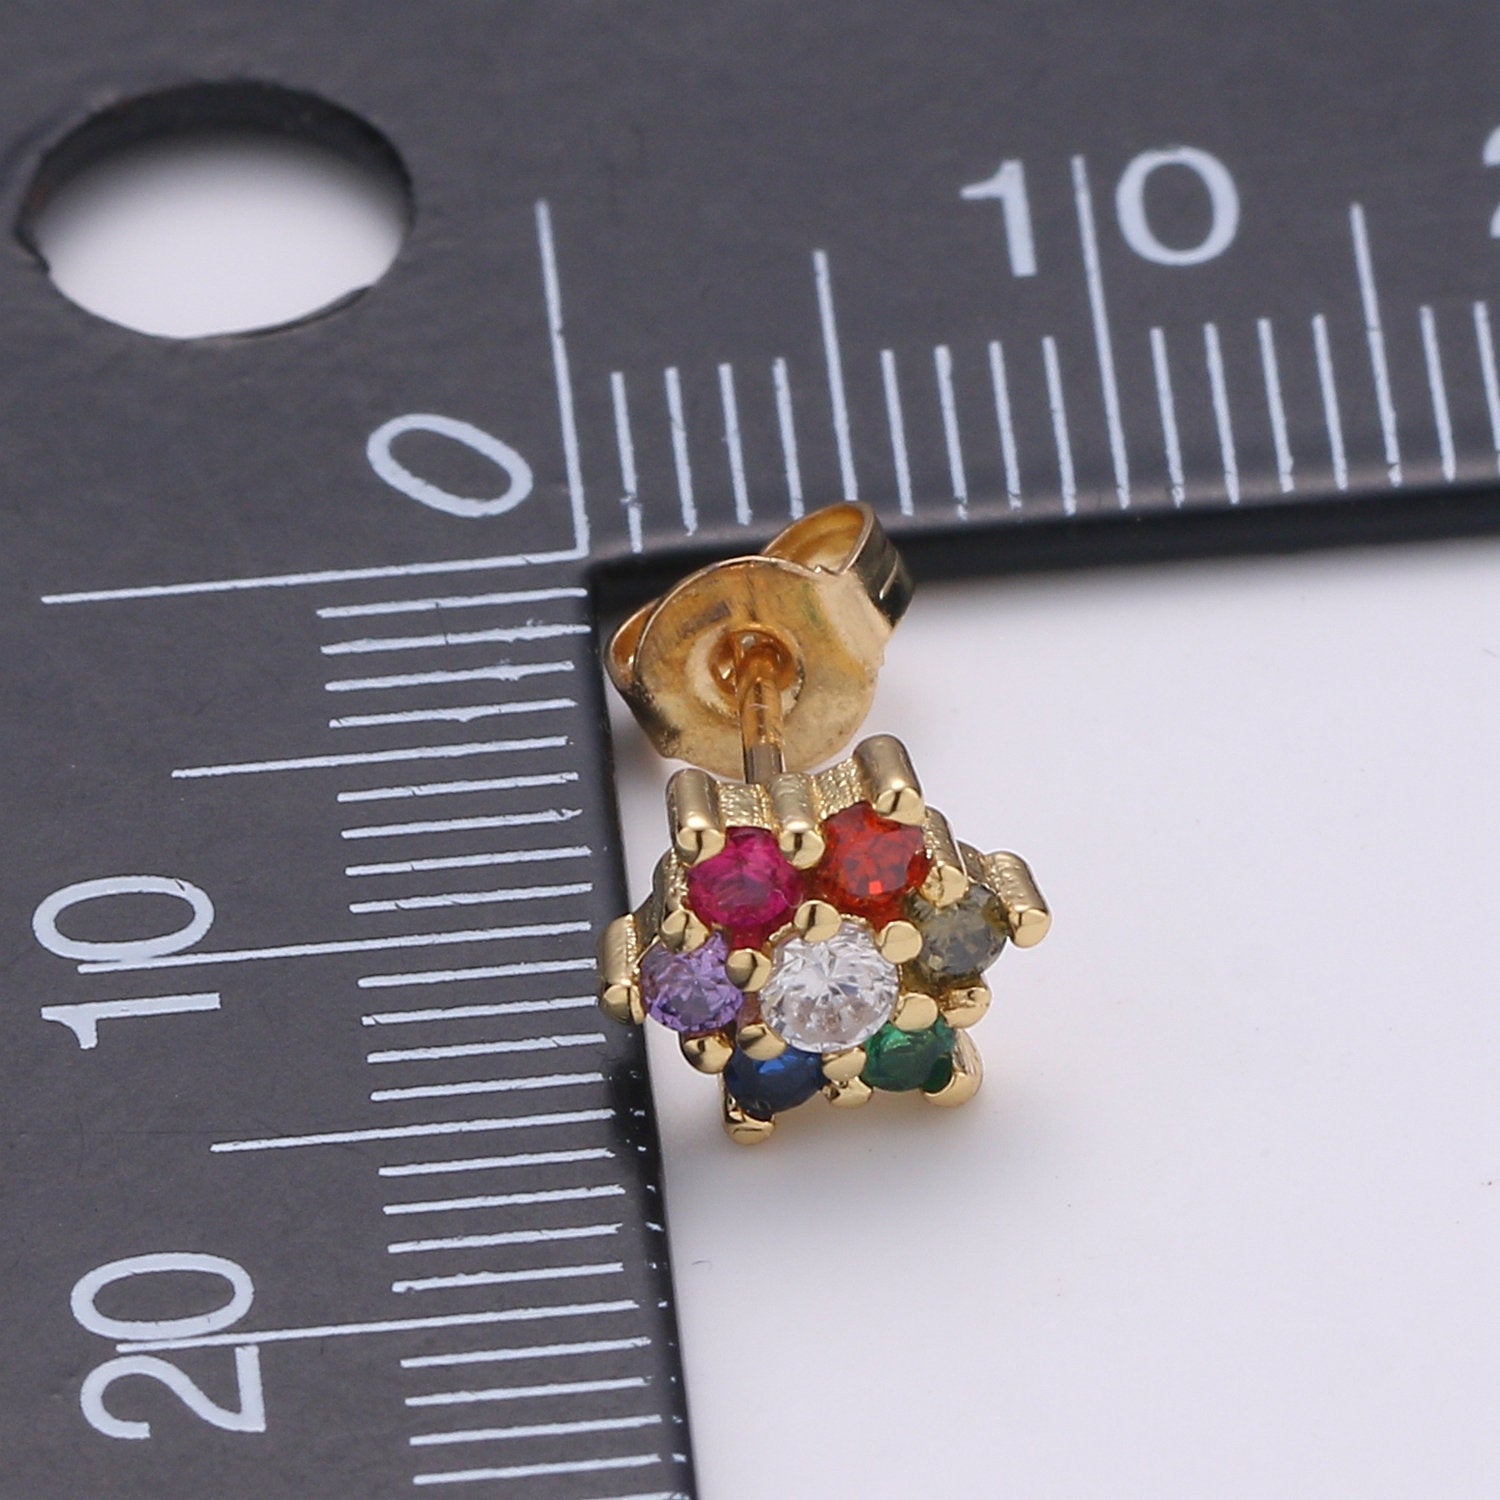 Tiny flower stud earrings, dainty stud earrings, flower stud earrings, star cz stud earrings, diamond cz studs, EARR-1236/Q-285 - DLUXCA